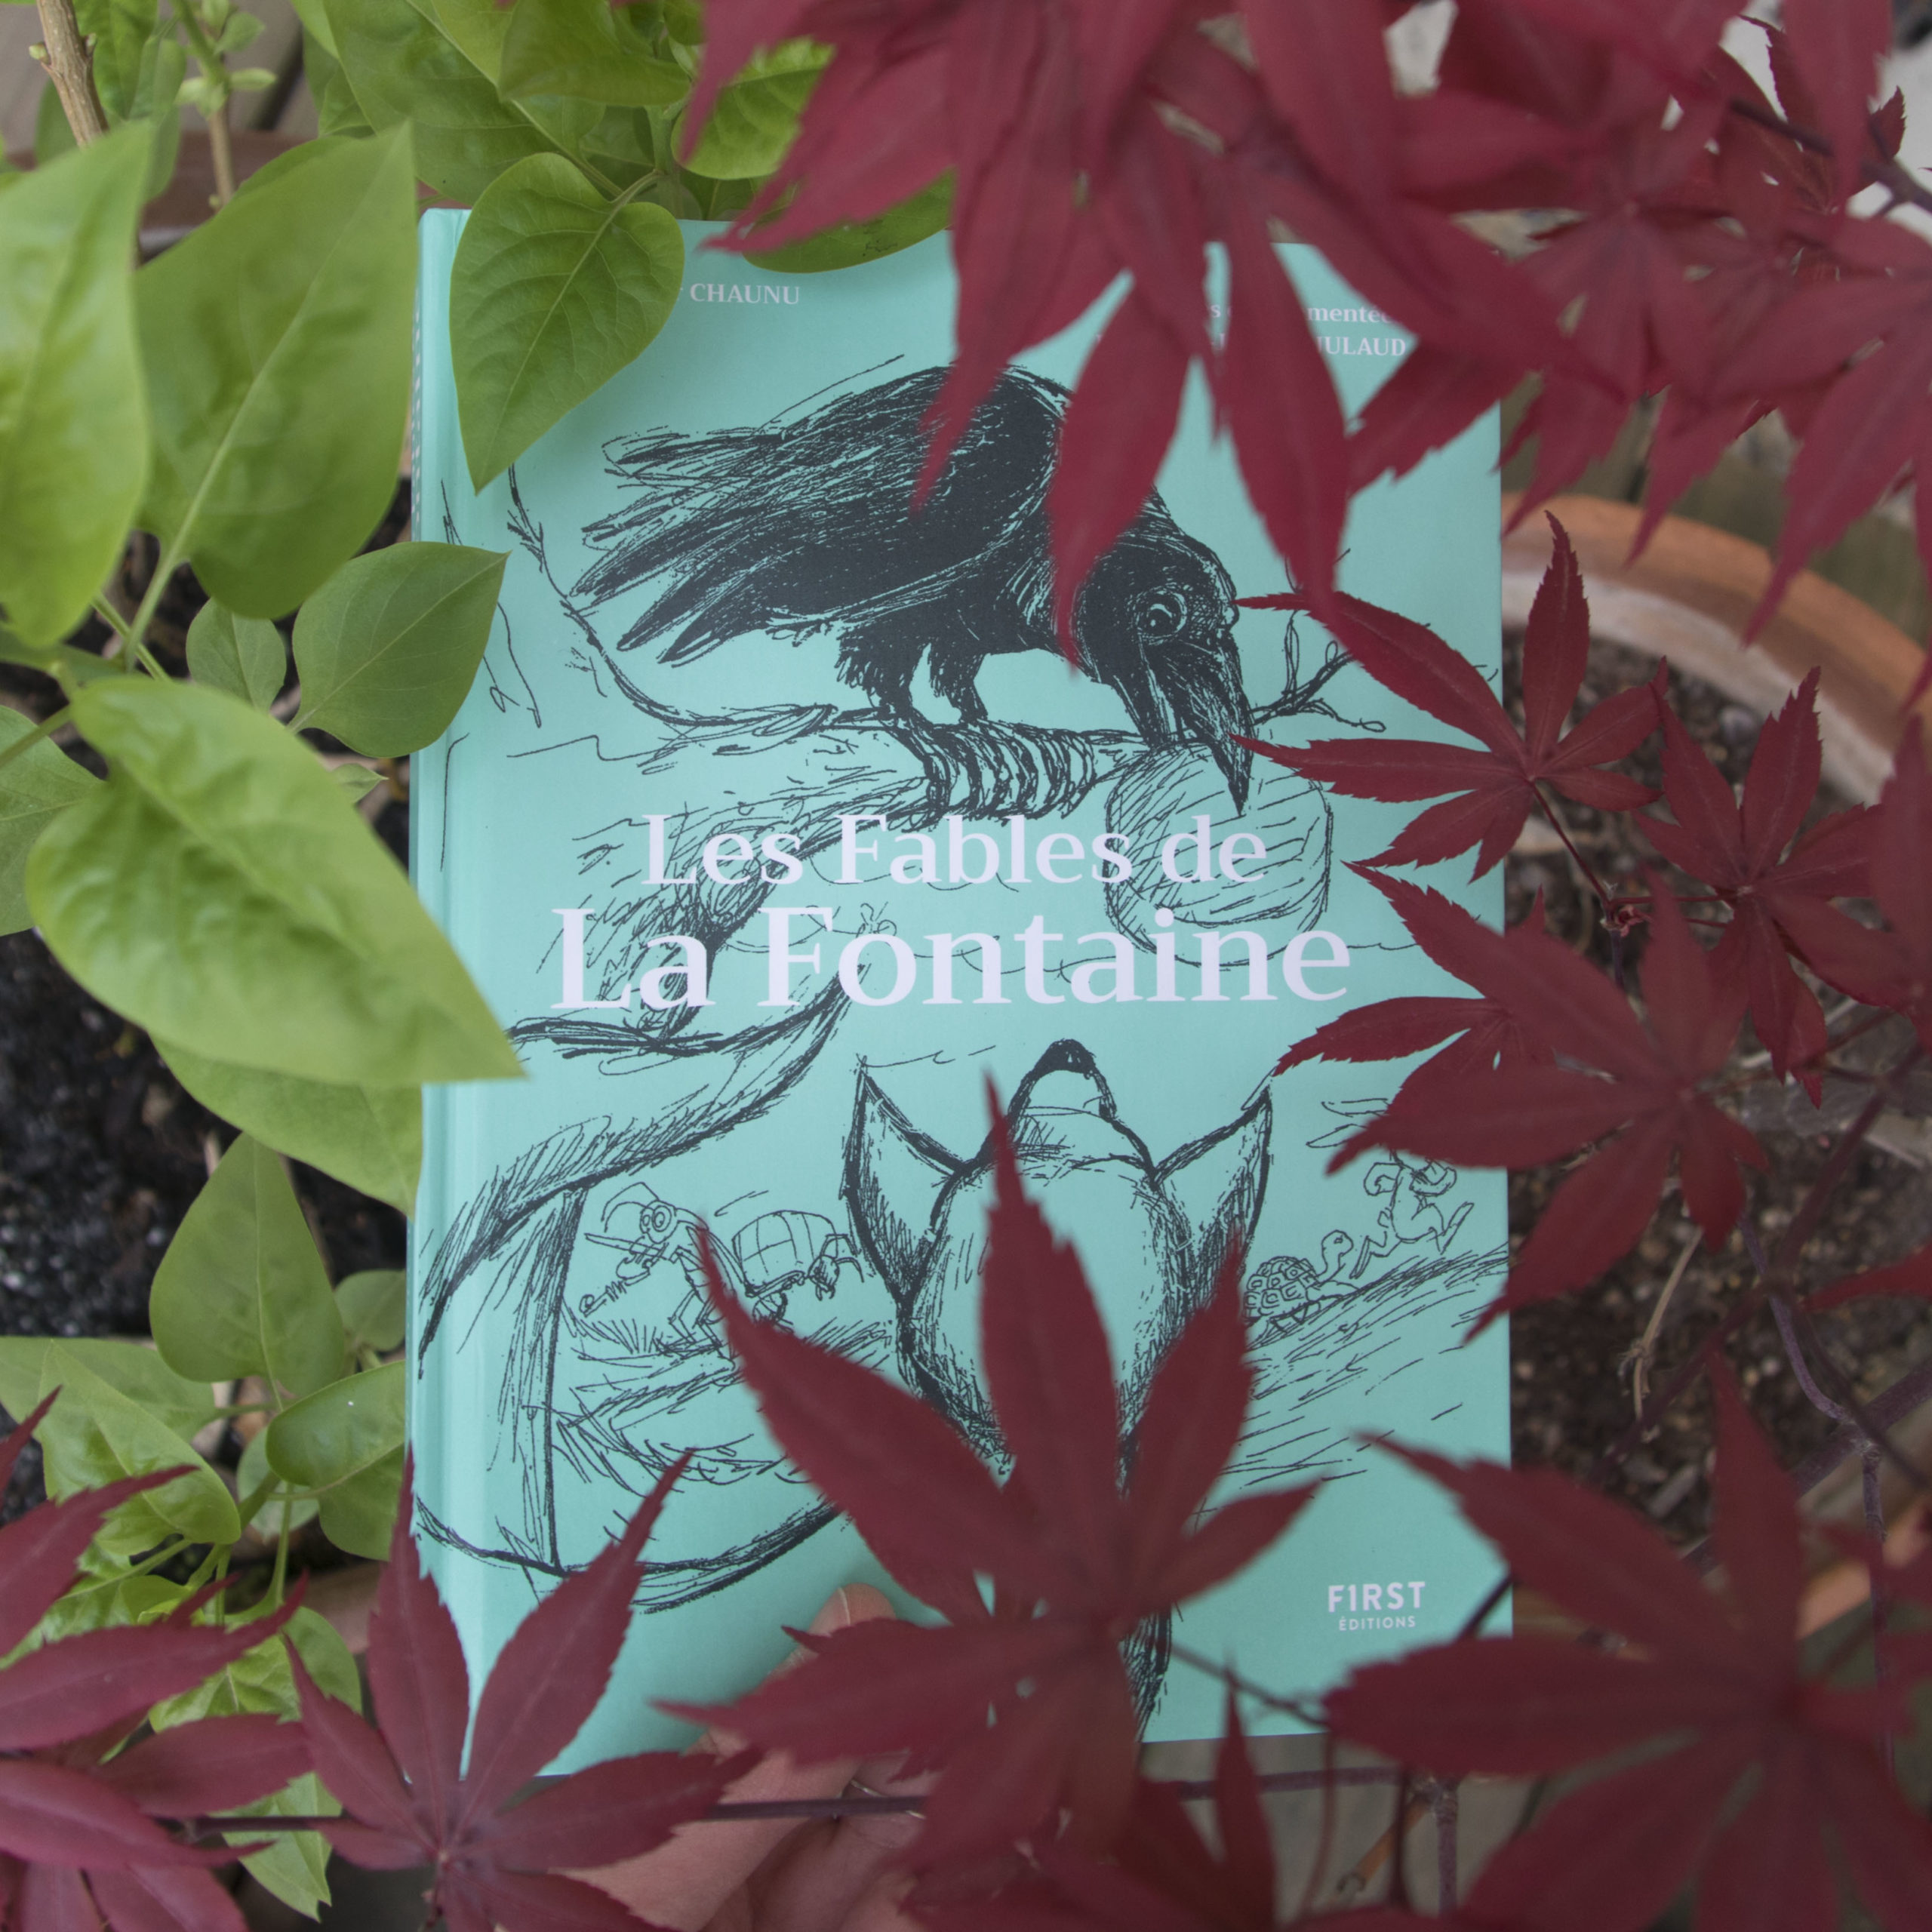 Les fables de La Fontaine, Jean-Joseph Julaud, Chaunu, éditions First